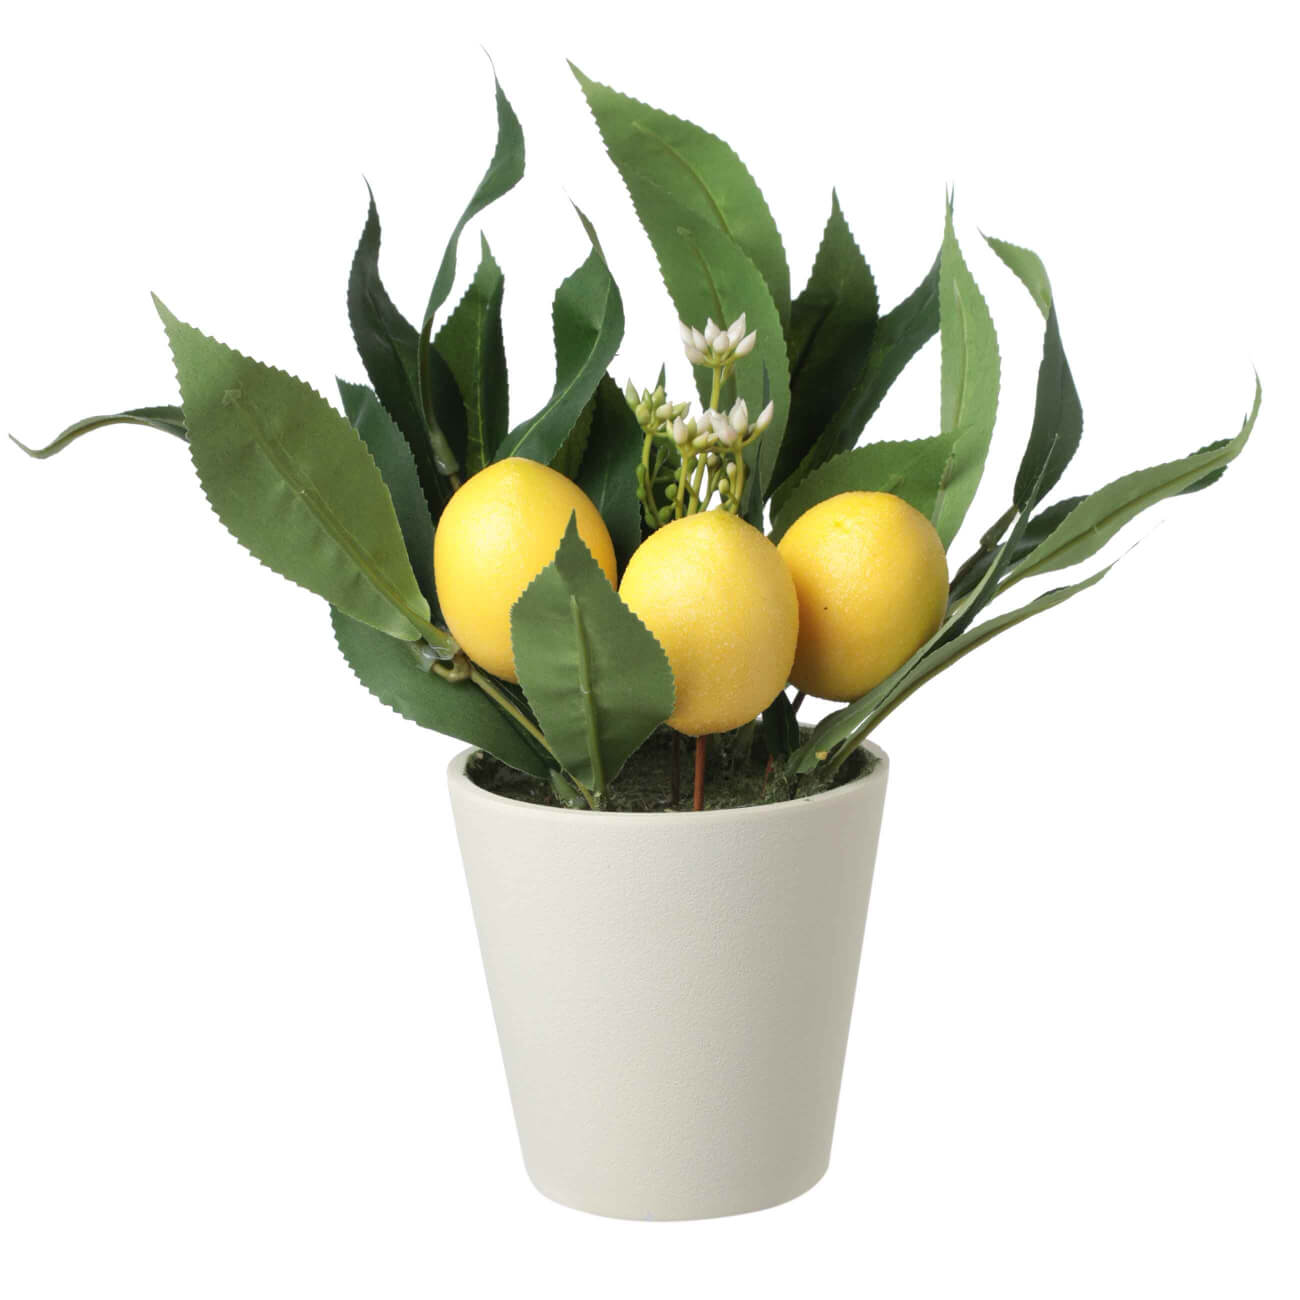 Растение искусственное, 28 см, в горшке, полиэстер/меламин, Лимоны, Pot garden растение искусственное 28 см в горшке полиэстер меламин лимоны pot garden